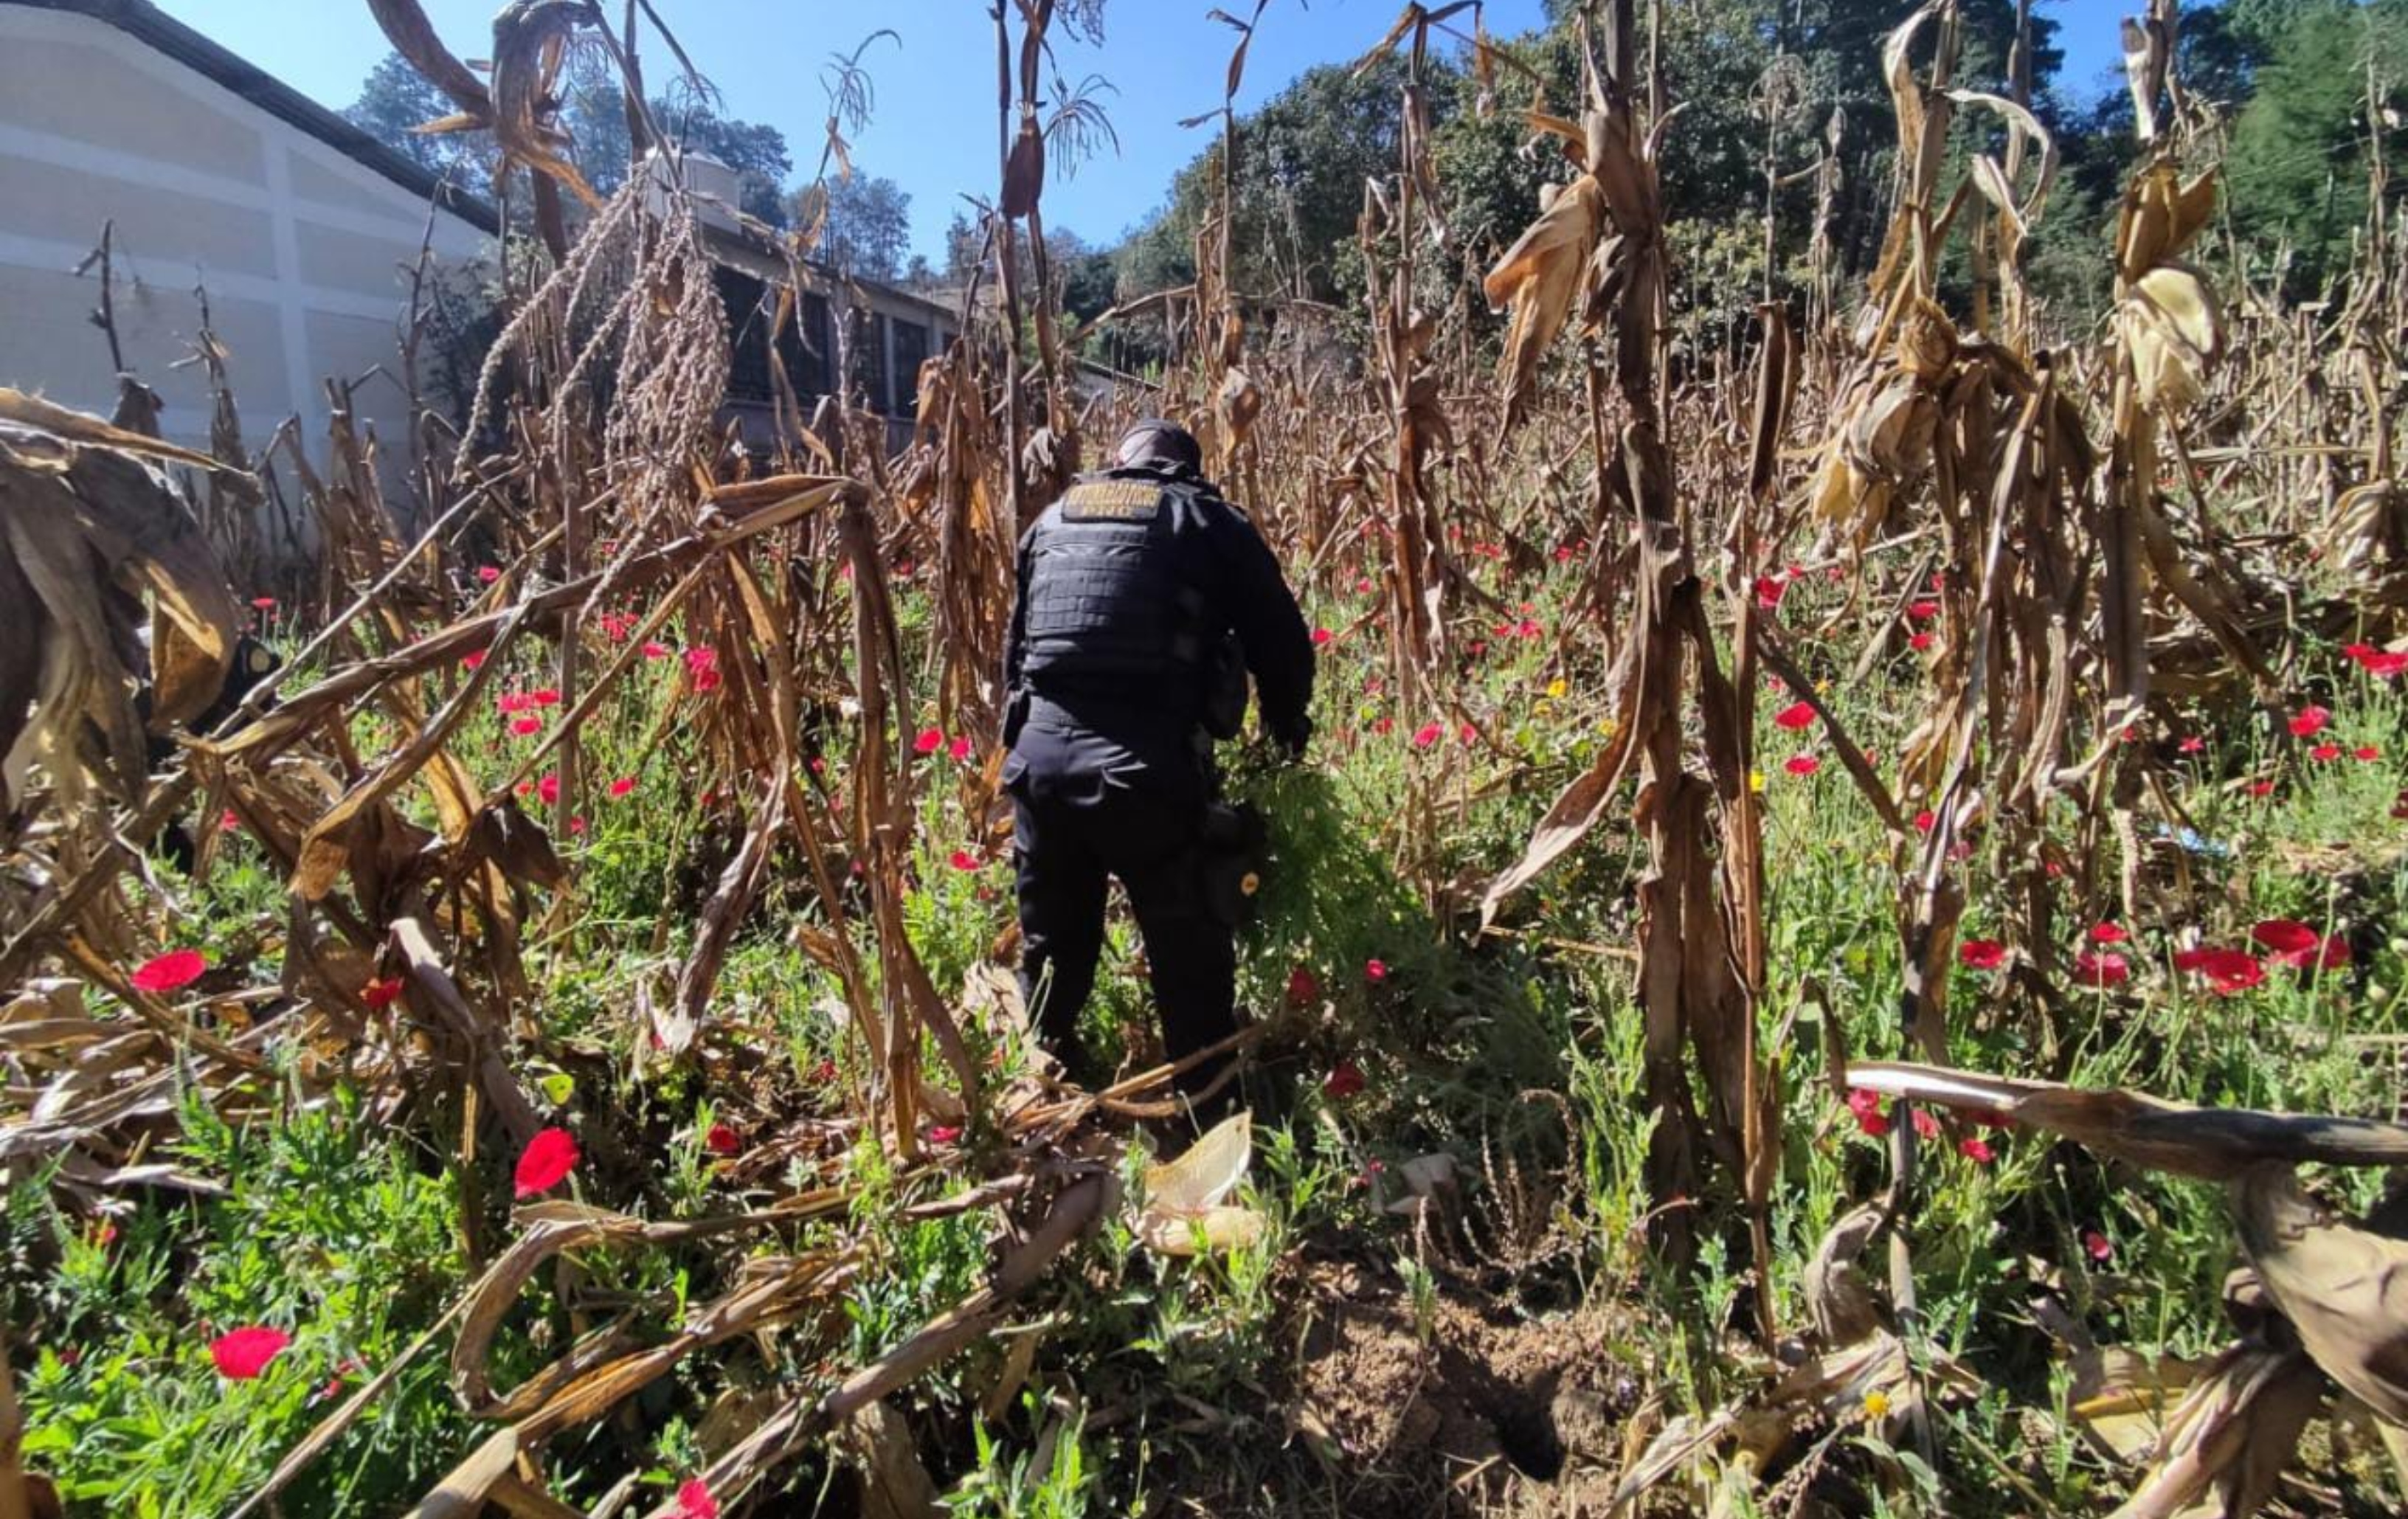 Unidades antinarcóticas de la PNC erradicaron mil matas de amapola en un sector de San Juan Comalapa, Chimaltenango el pasado 24 de febrero. Foto Prensa Libre: cortesía PNC.